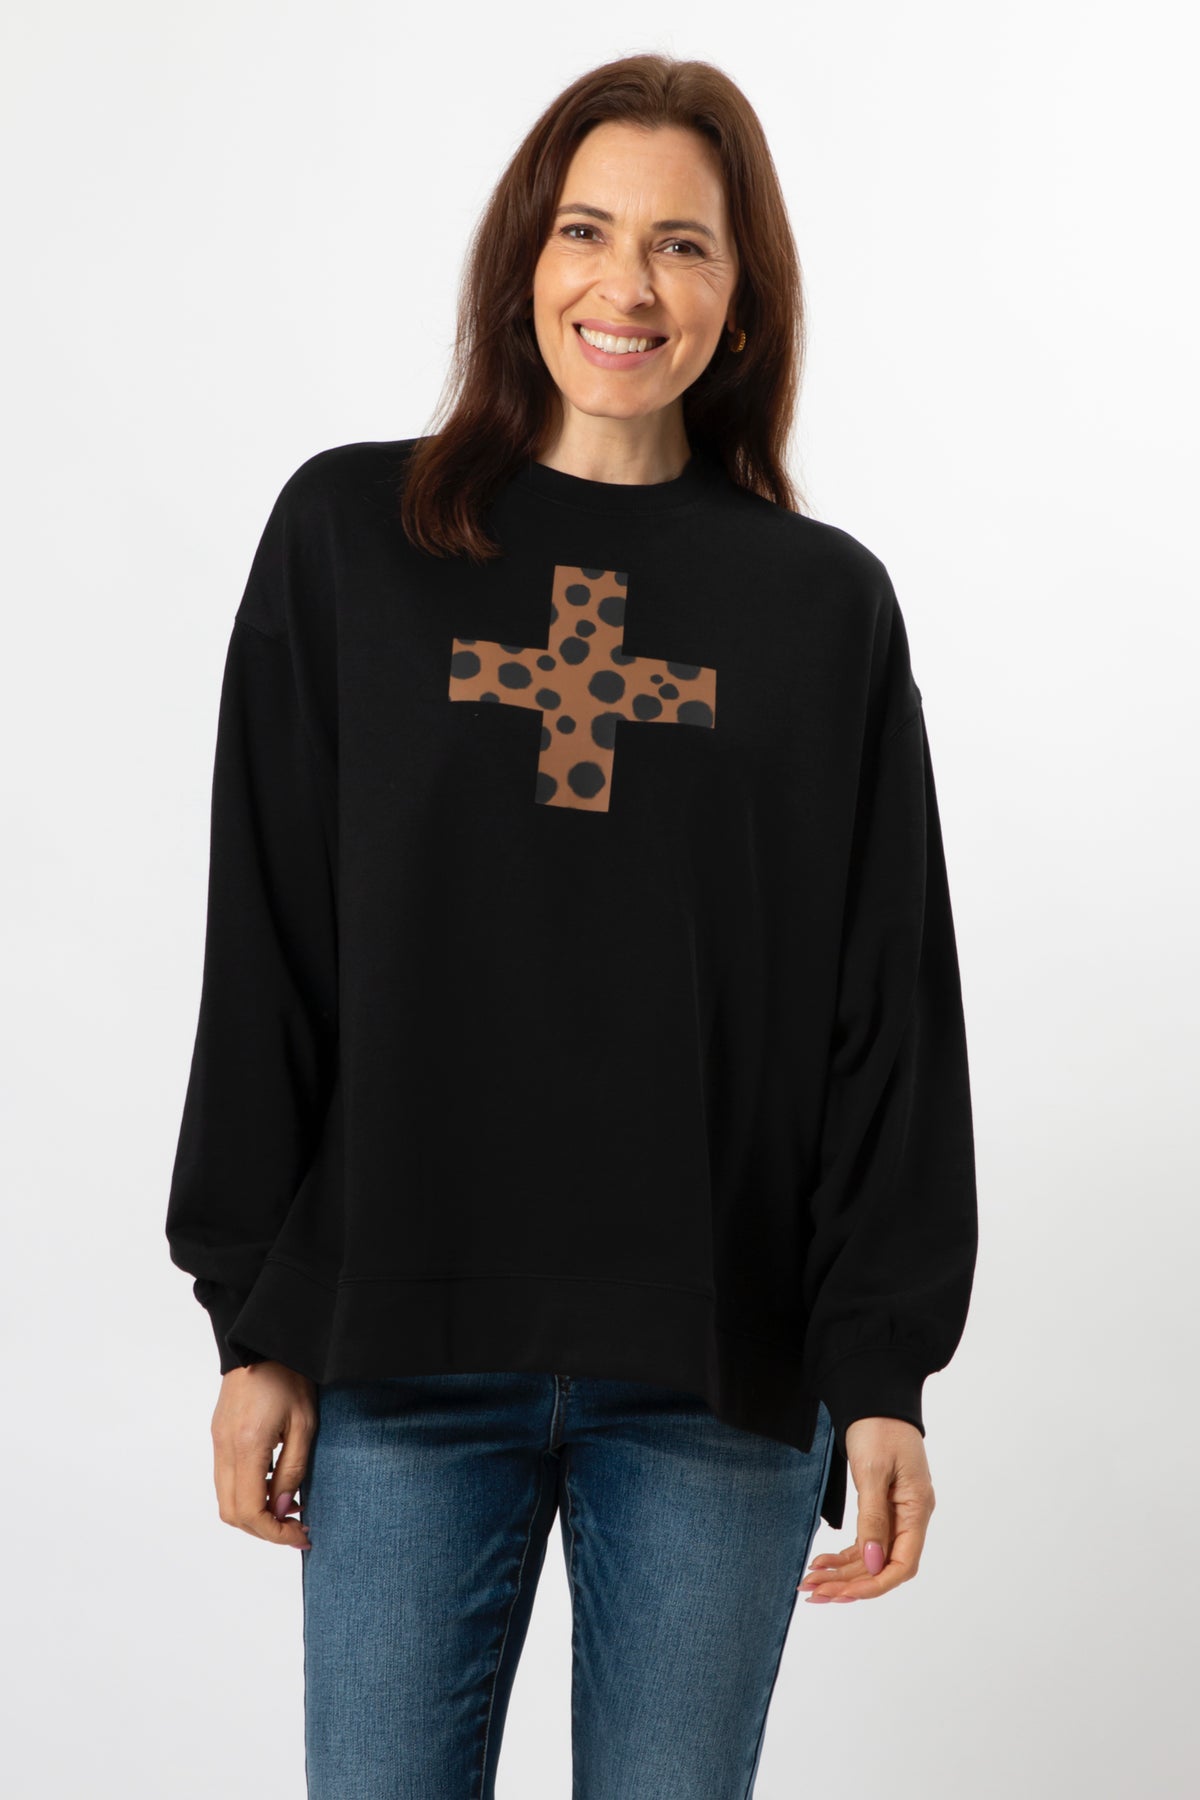 Sunday Sweater Black Choco Cheetah Cross